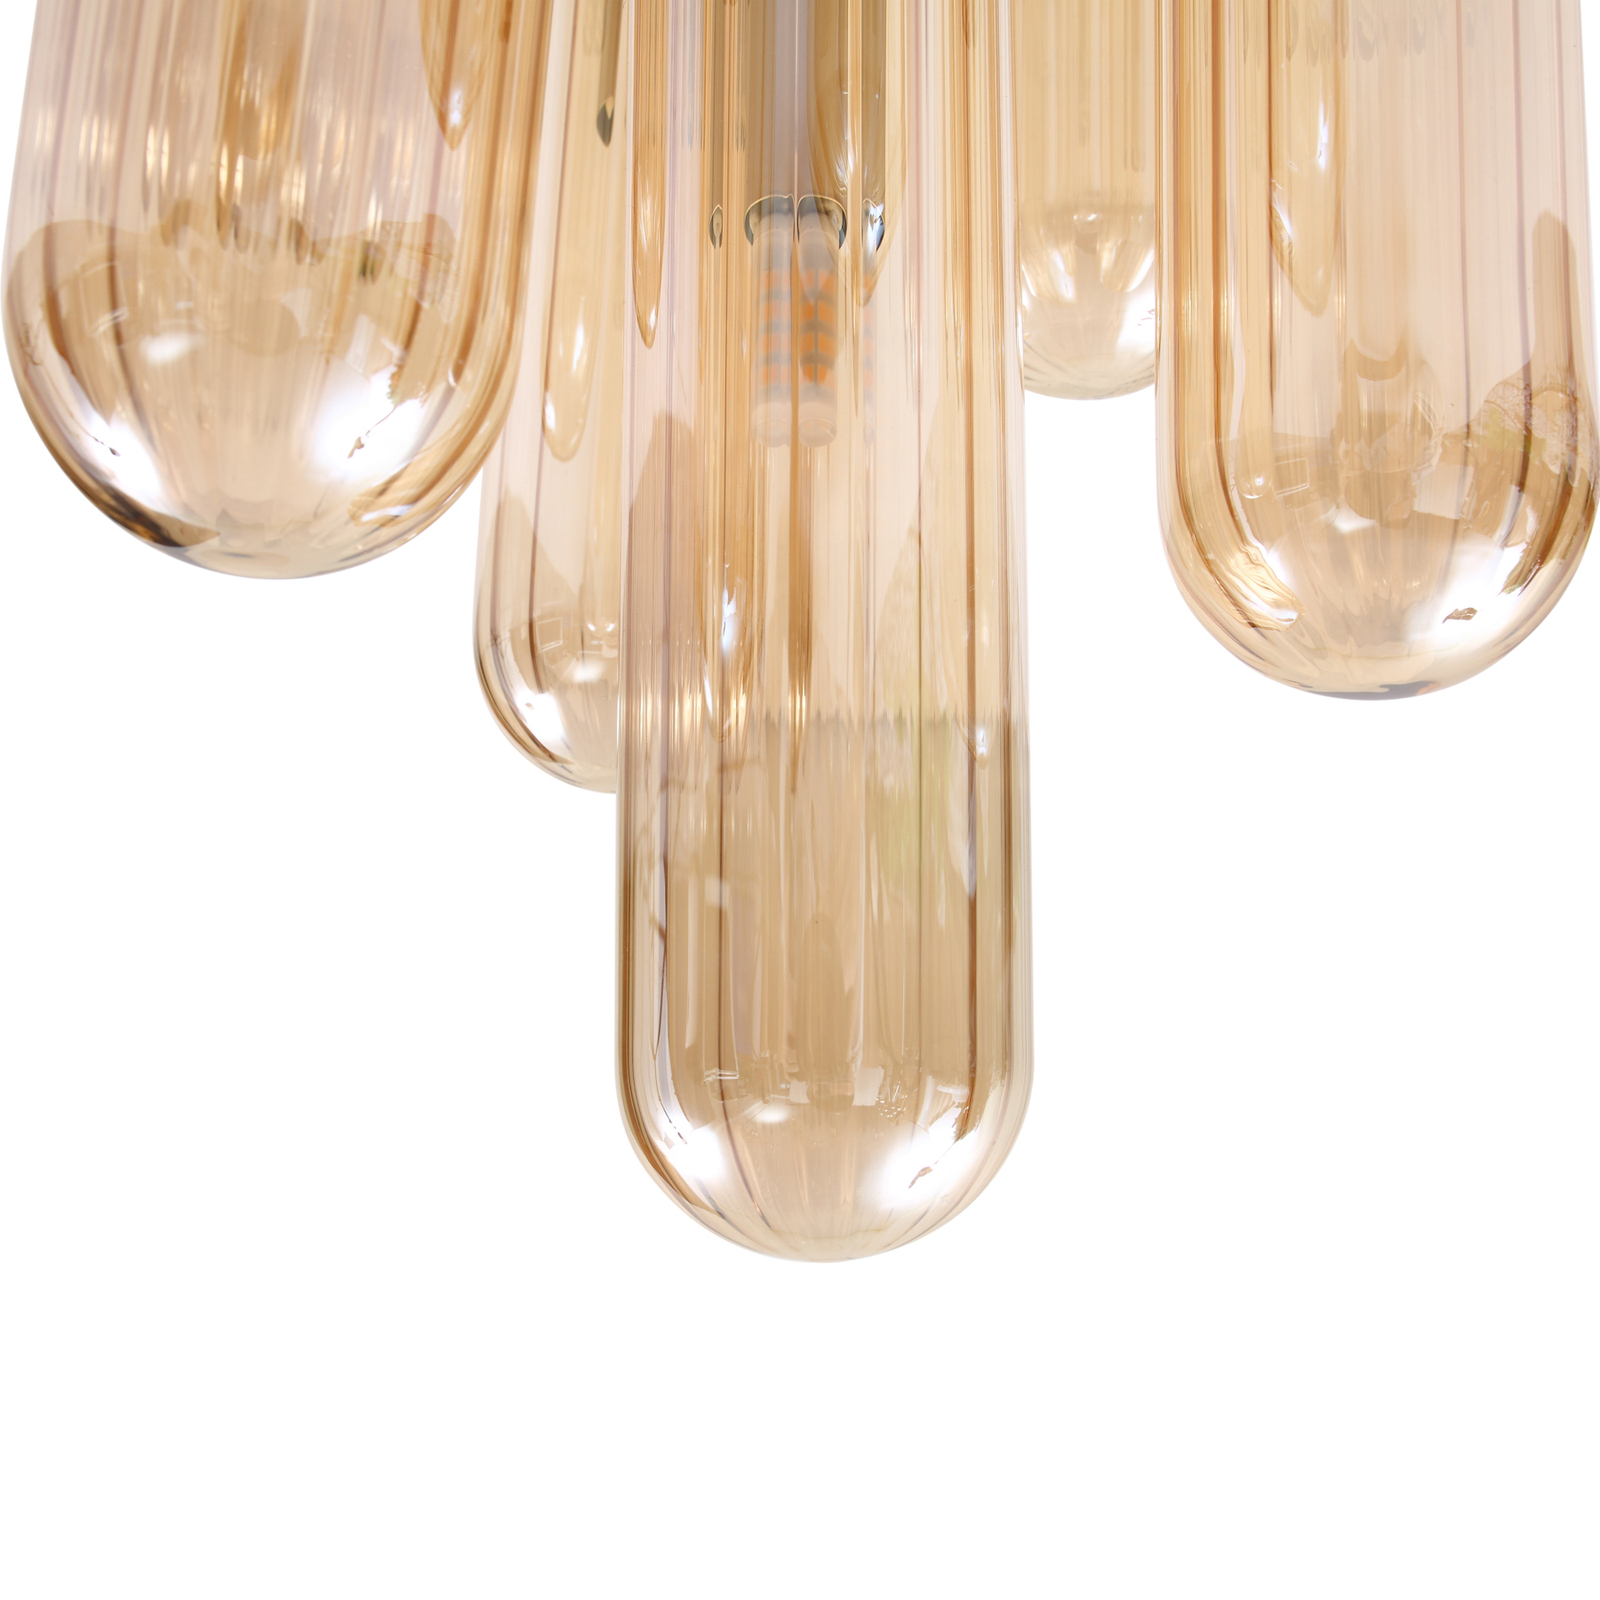 Lucande Freylin ceiling light, 7-bulb, amber, glass, 23 cm